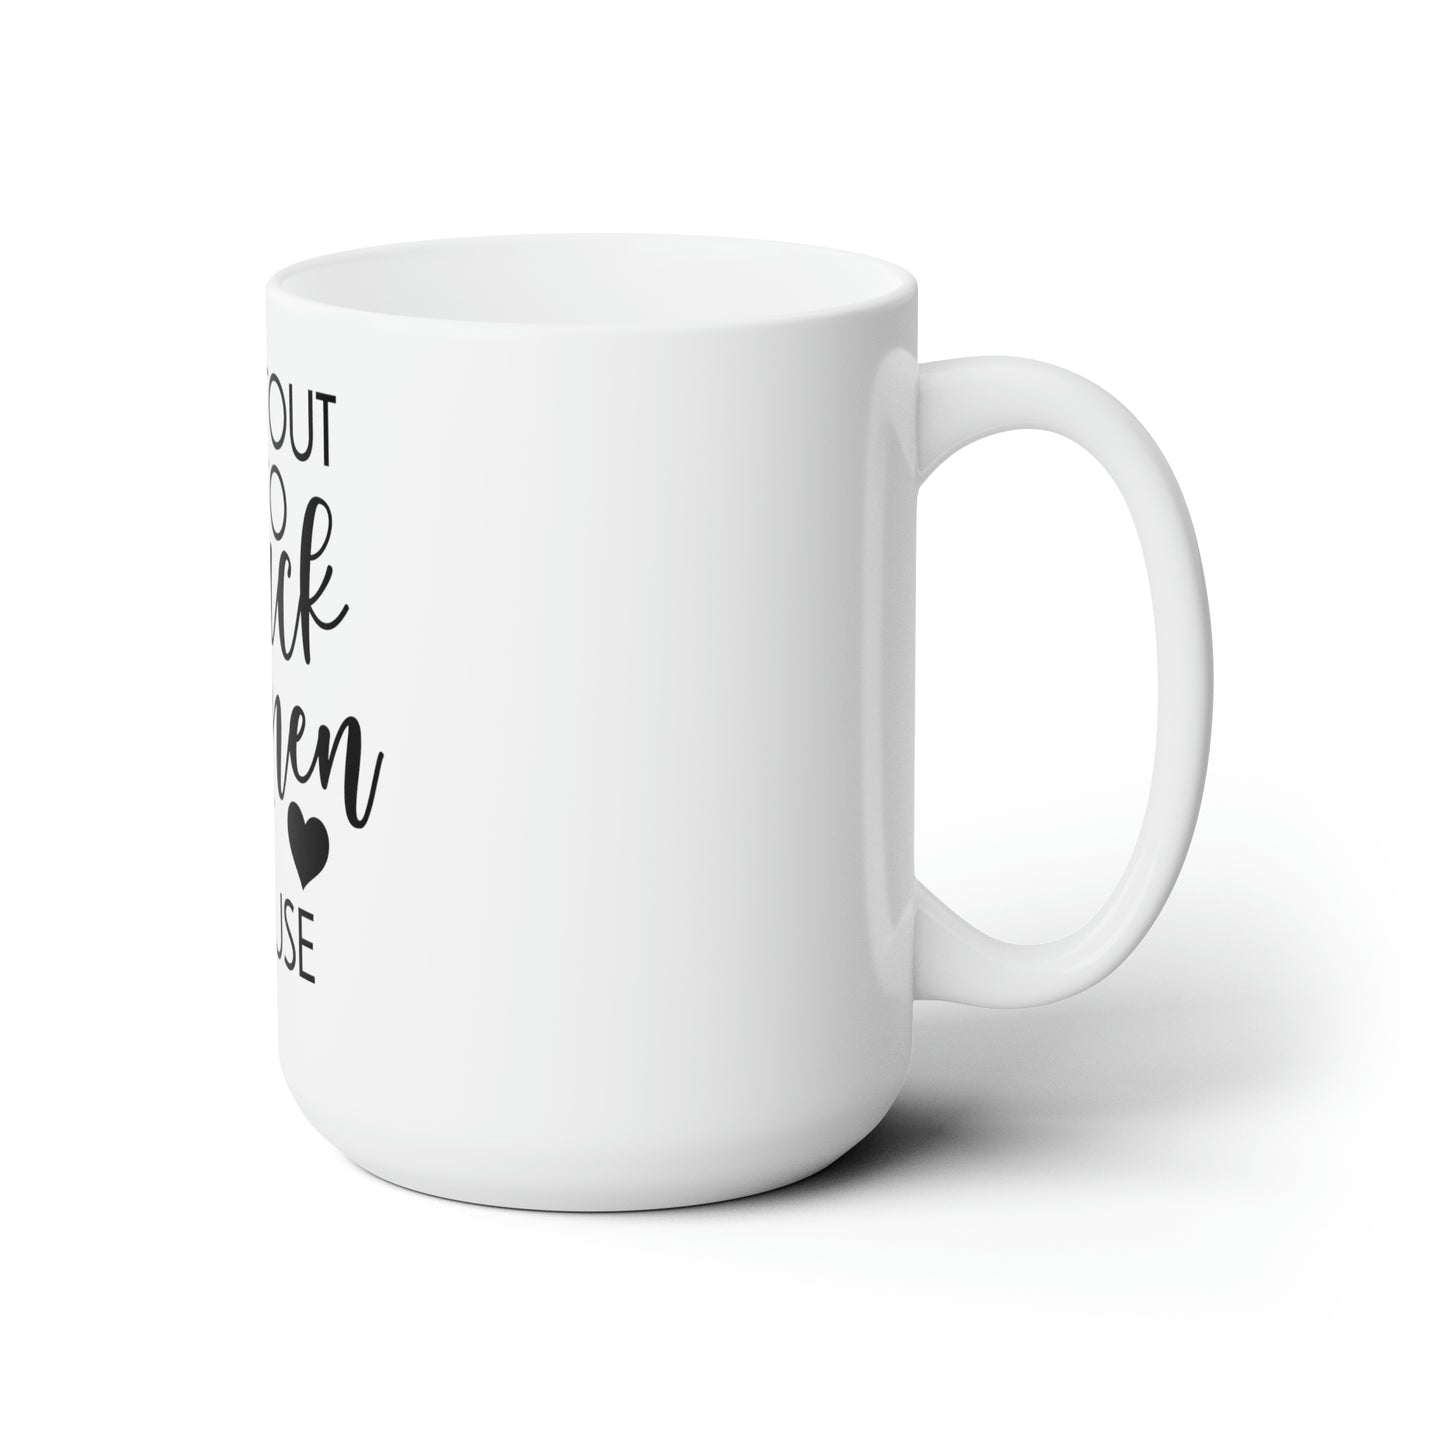 Shout out Ceramic Mug 15oz